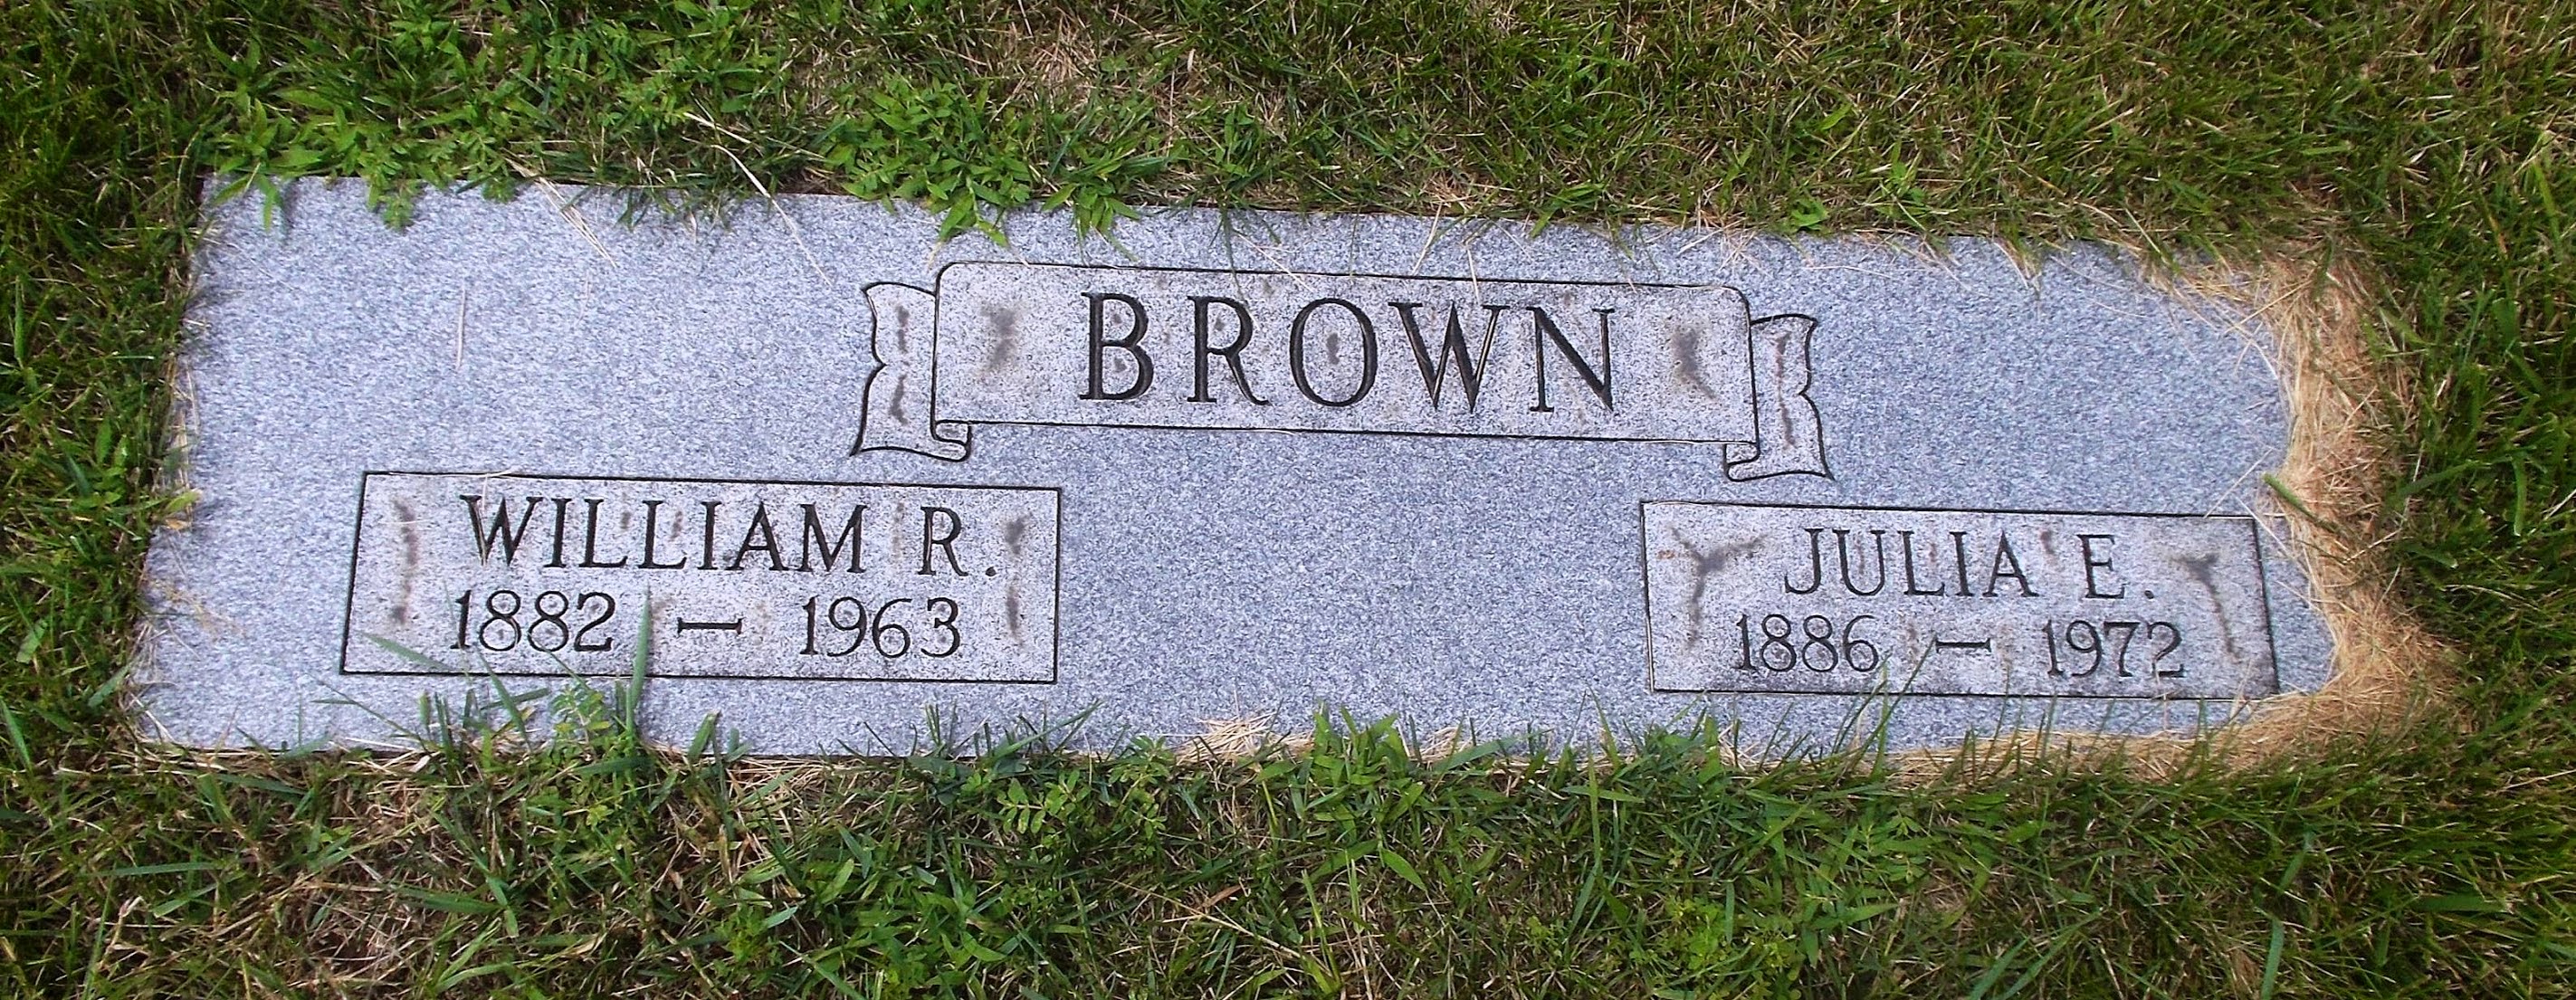 William R Brown